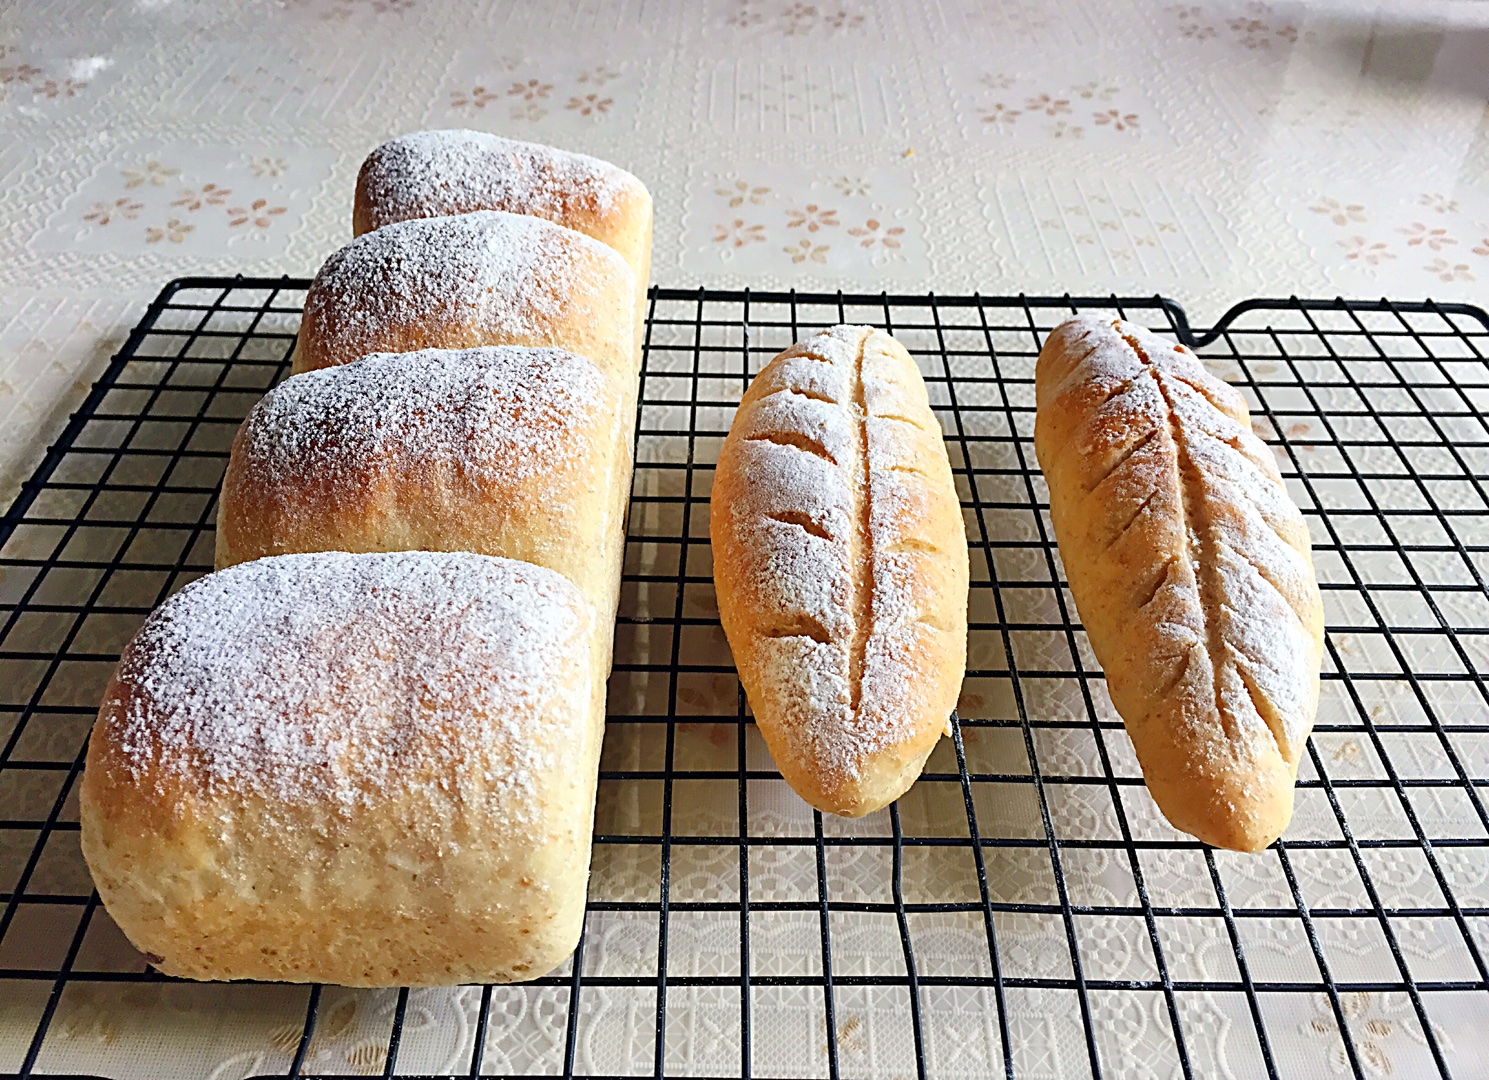 超软100分百全麦面包 无油低糖 的做法步骤图 Lei蕾 下厨房